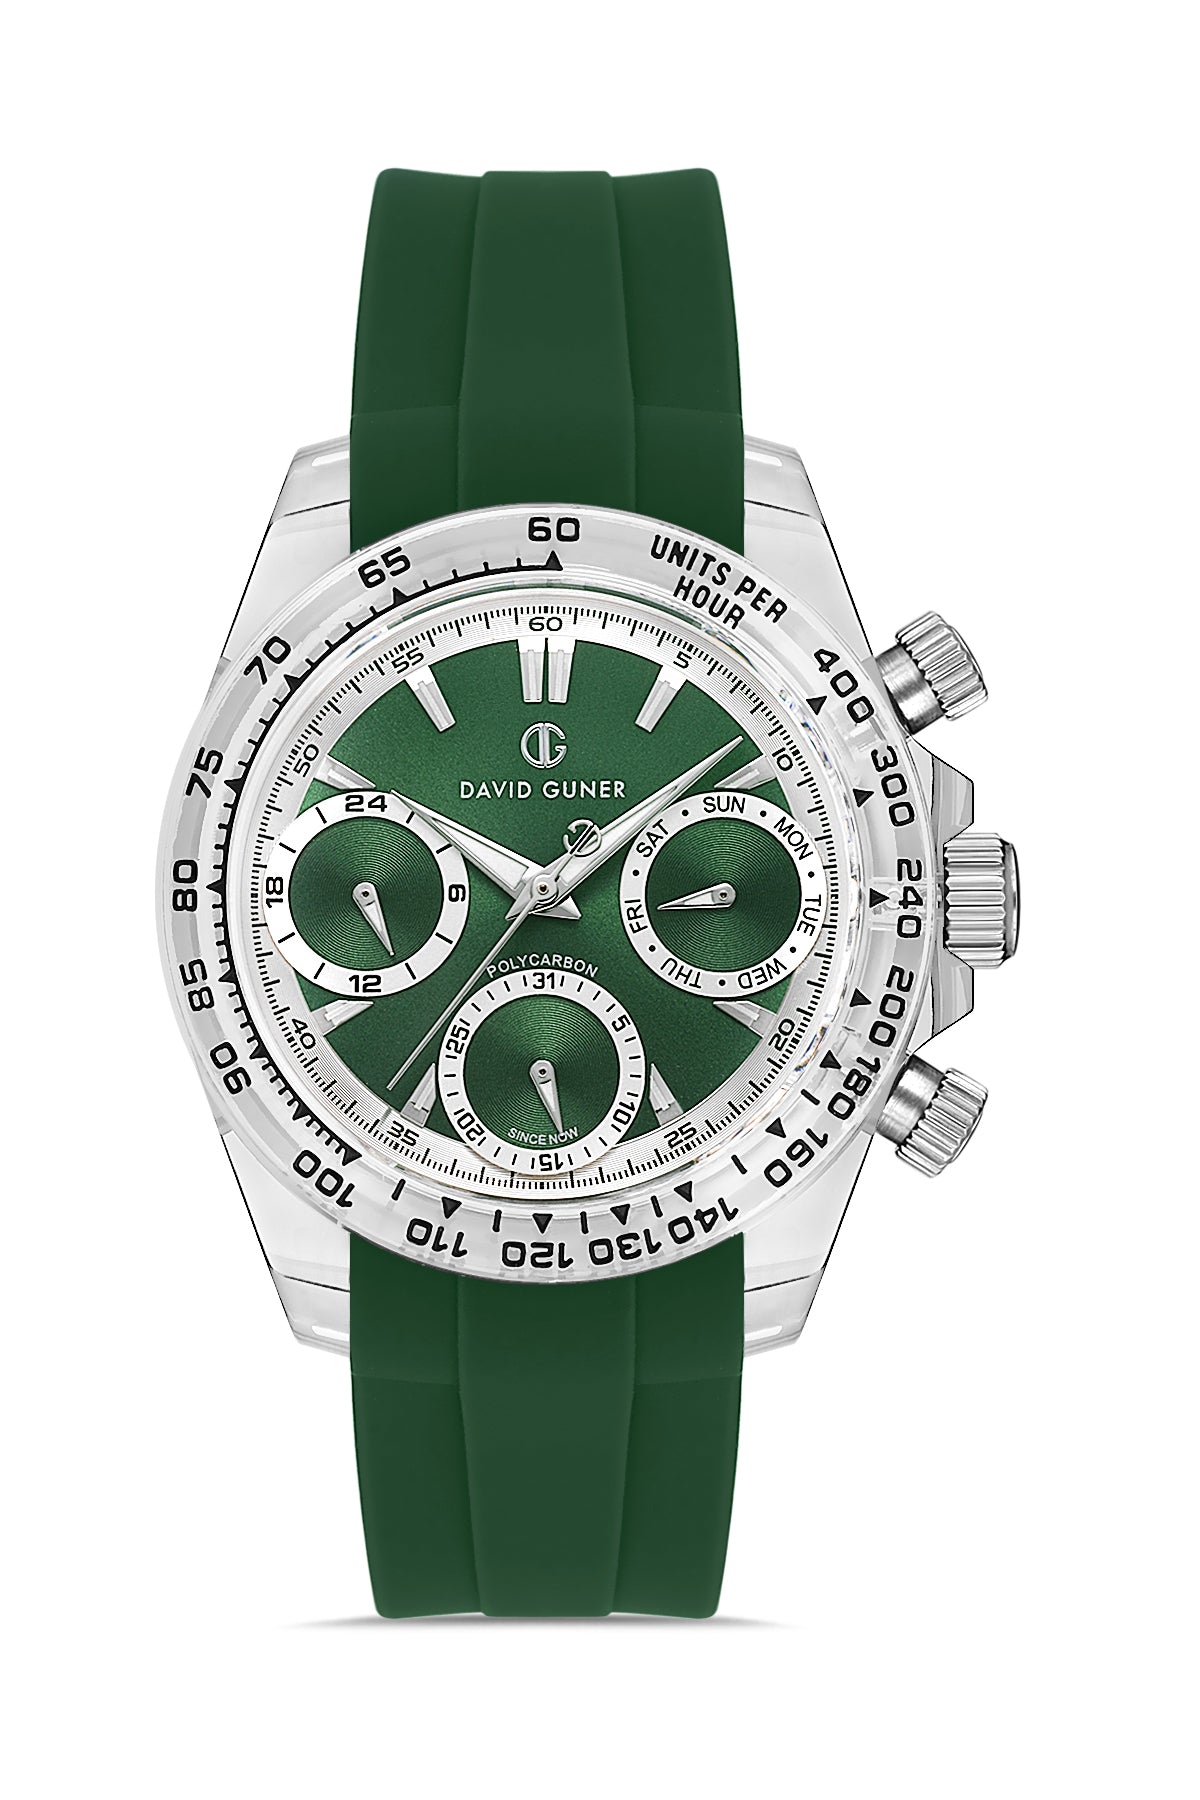 DAVID GUNER Polycarbonate Green Strap Unisex Wristwatch